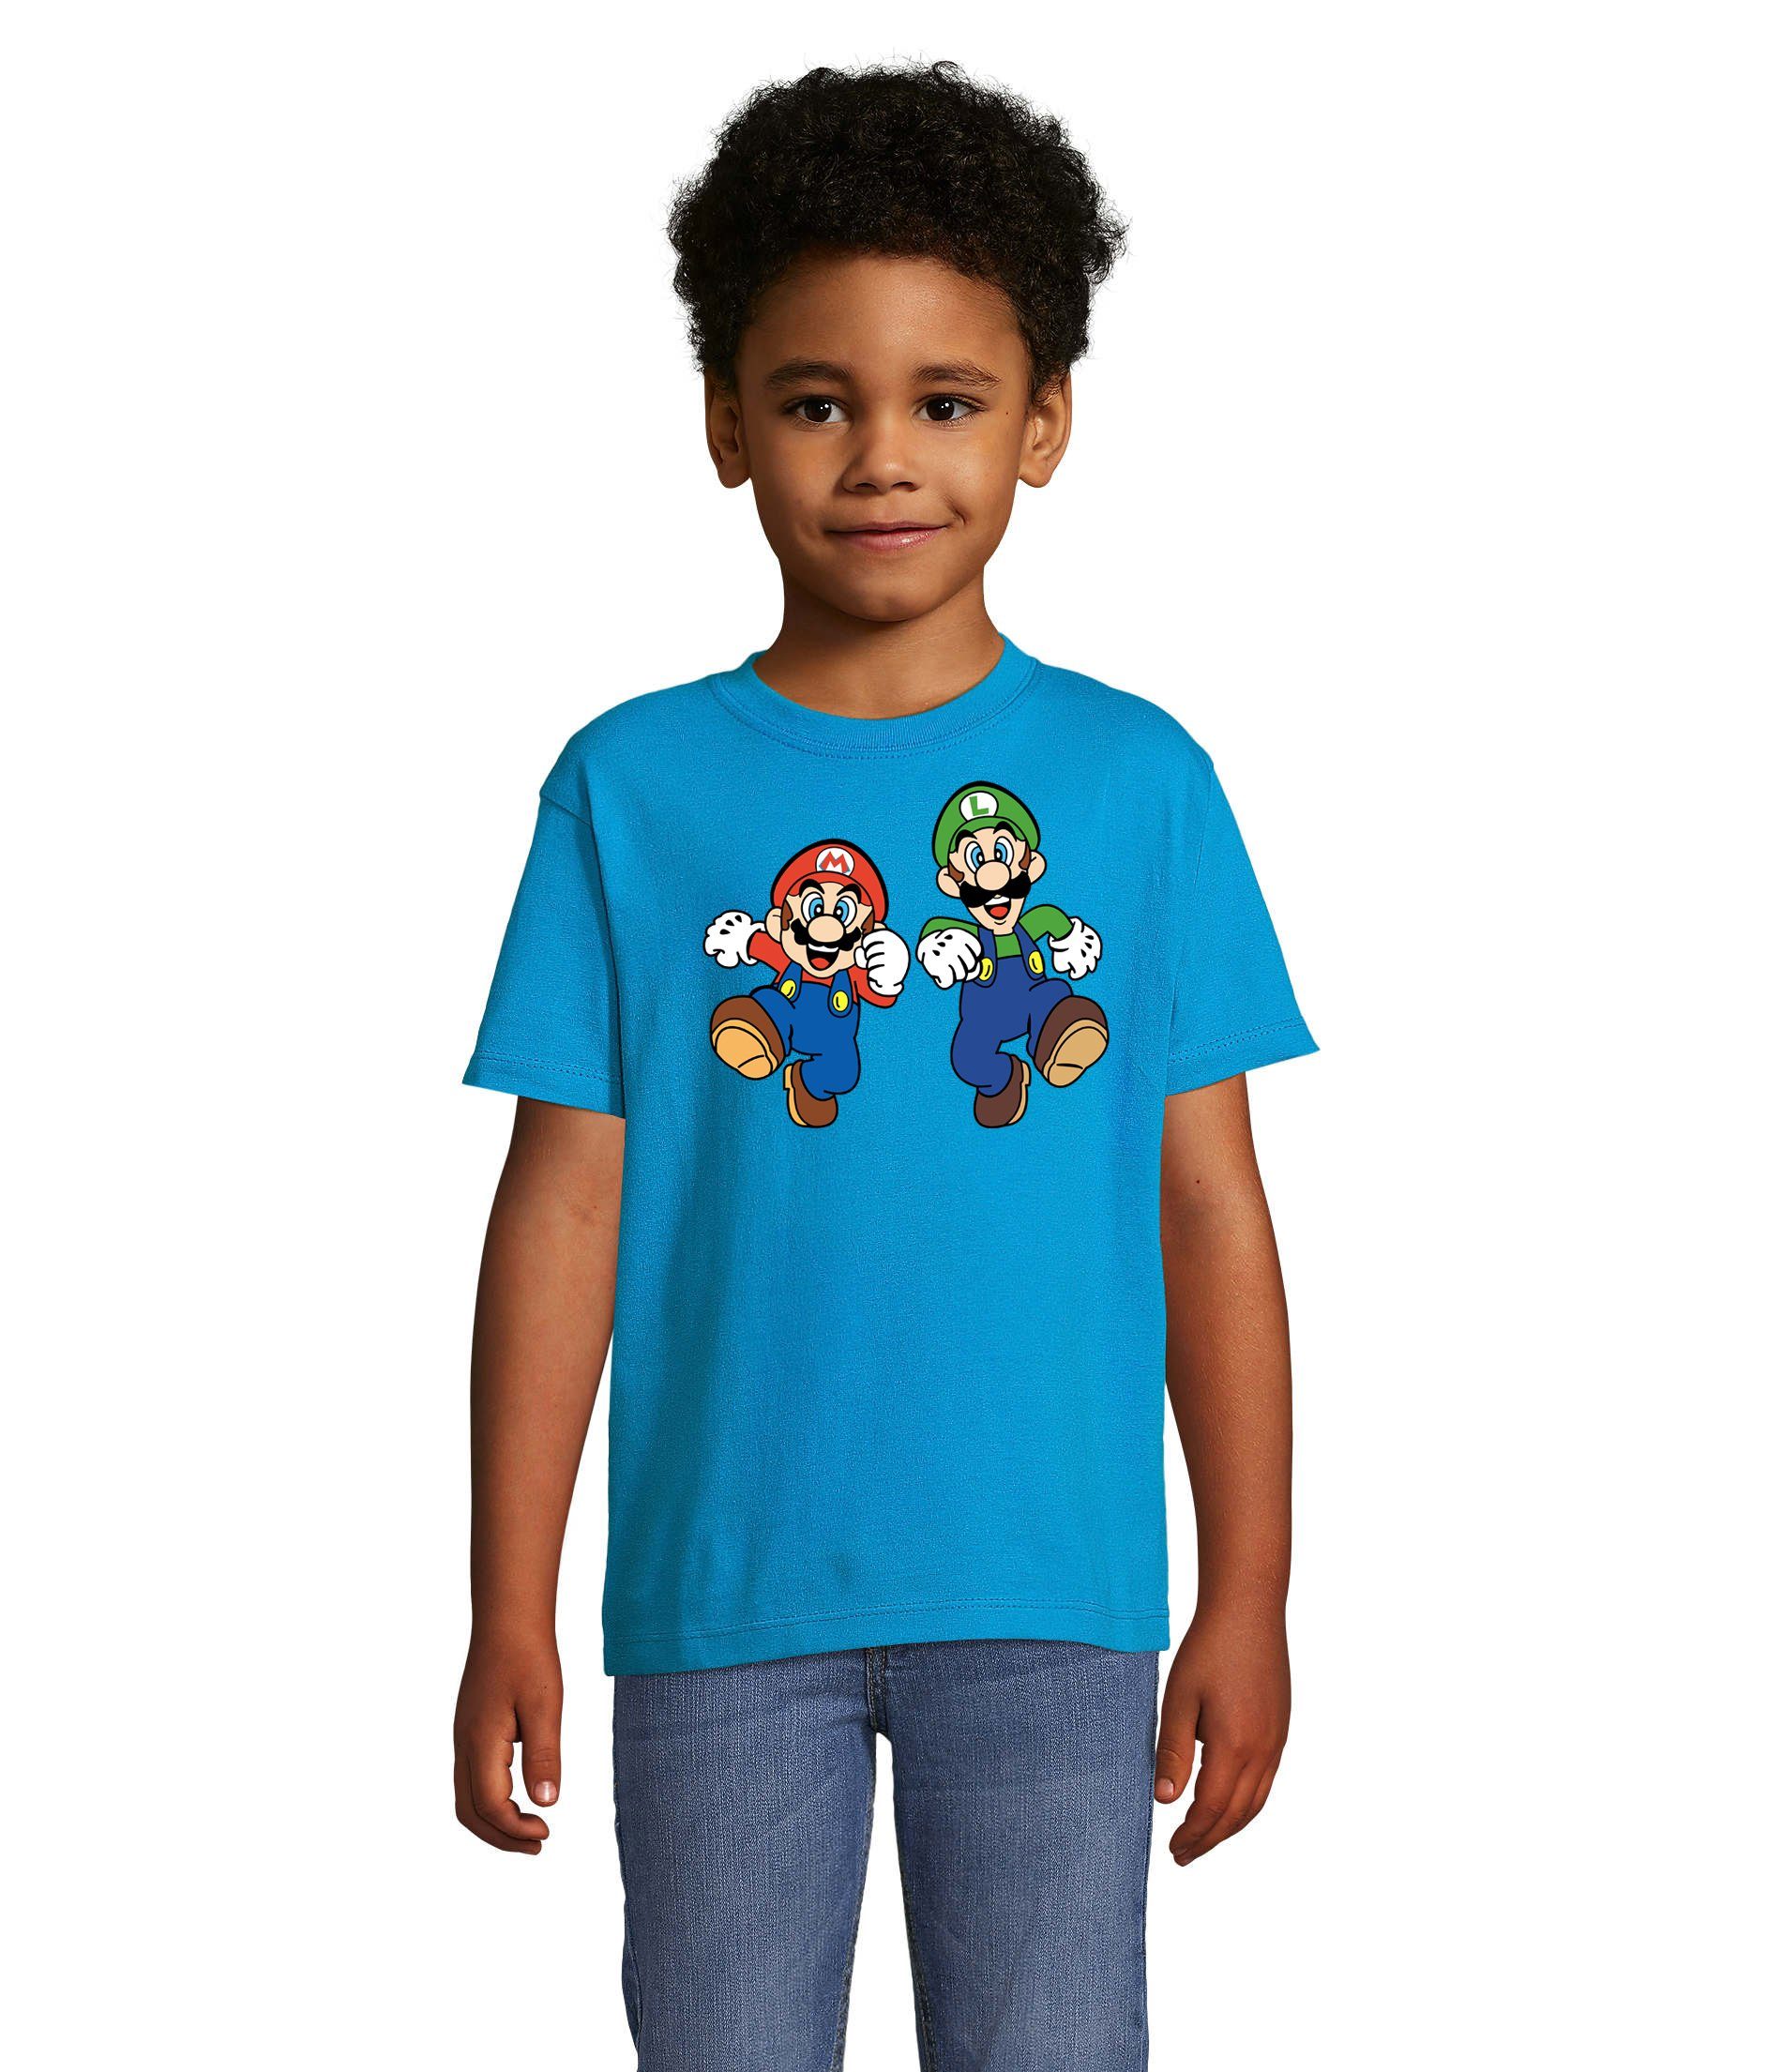 Blondie & Brownie T-Shirt Kinder Mario & Luigi Bowser Nintendo Yoshi Game Gamer Konsole Blau